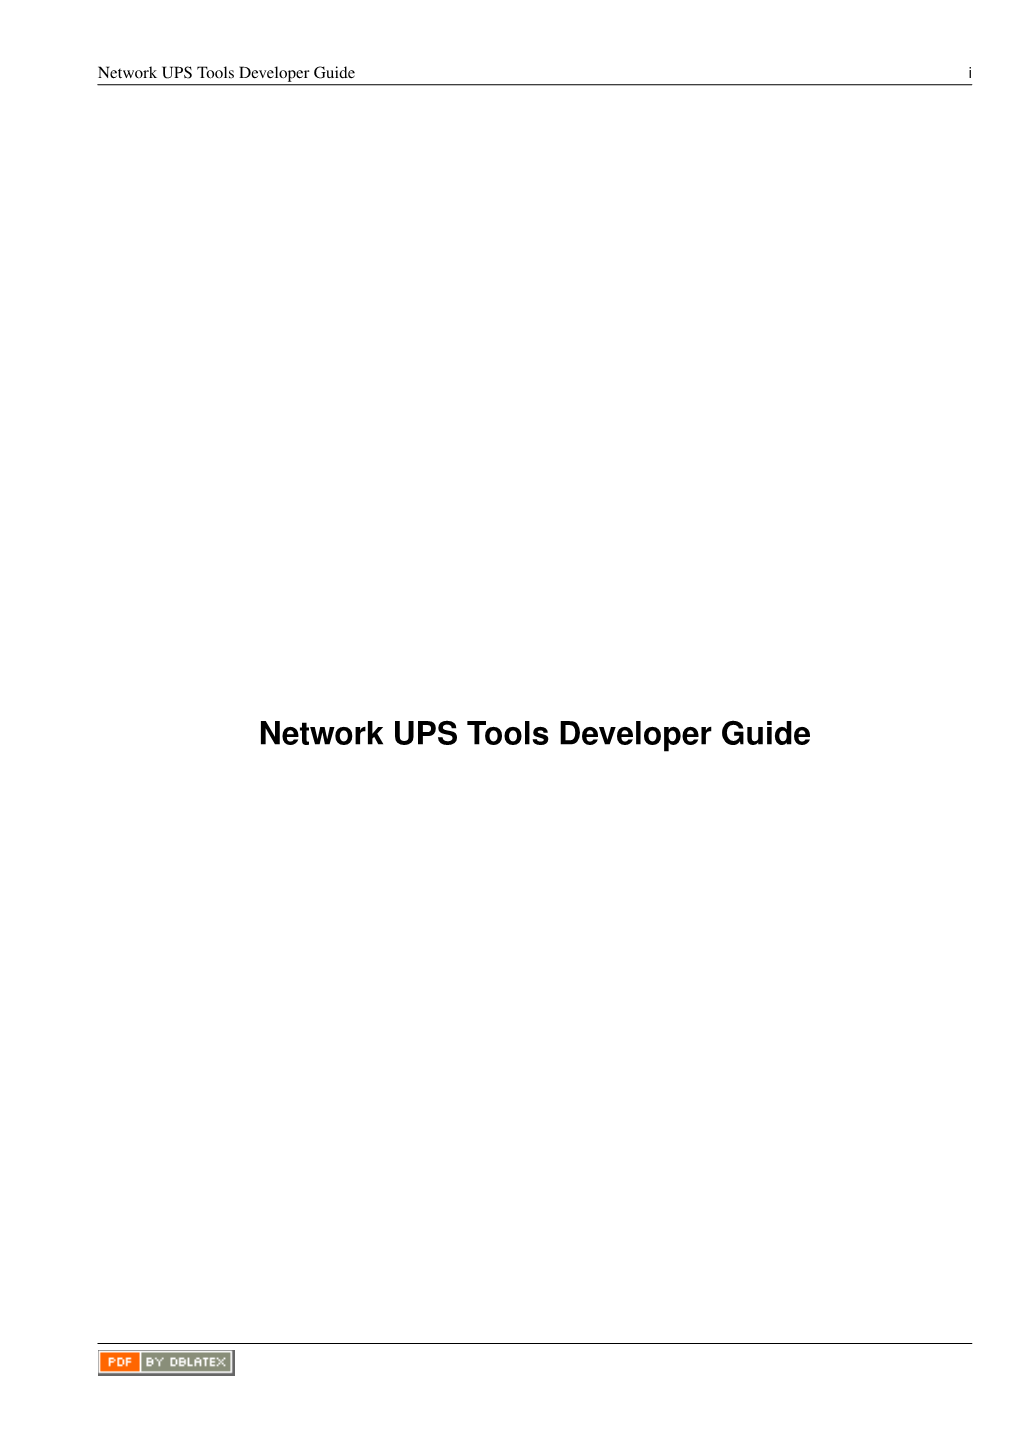 NUT Developer Guide